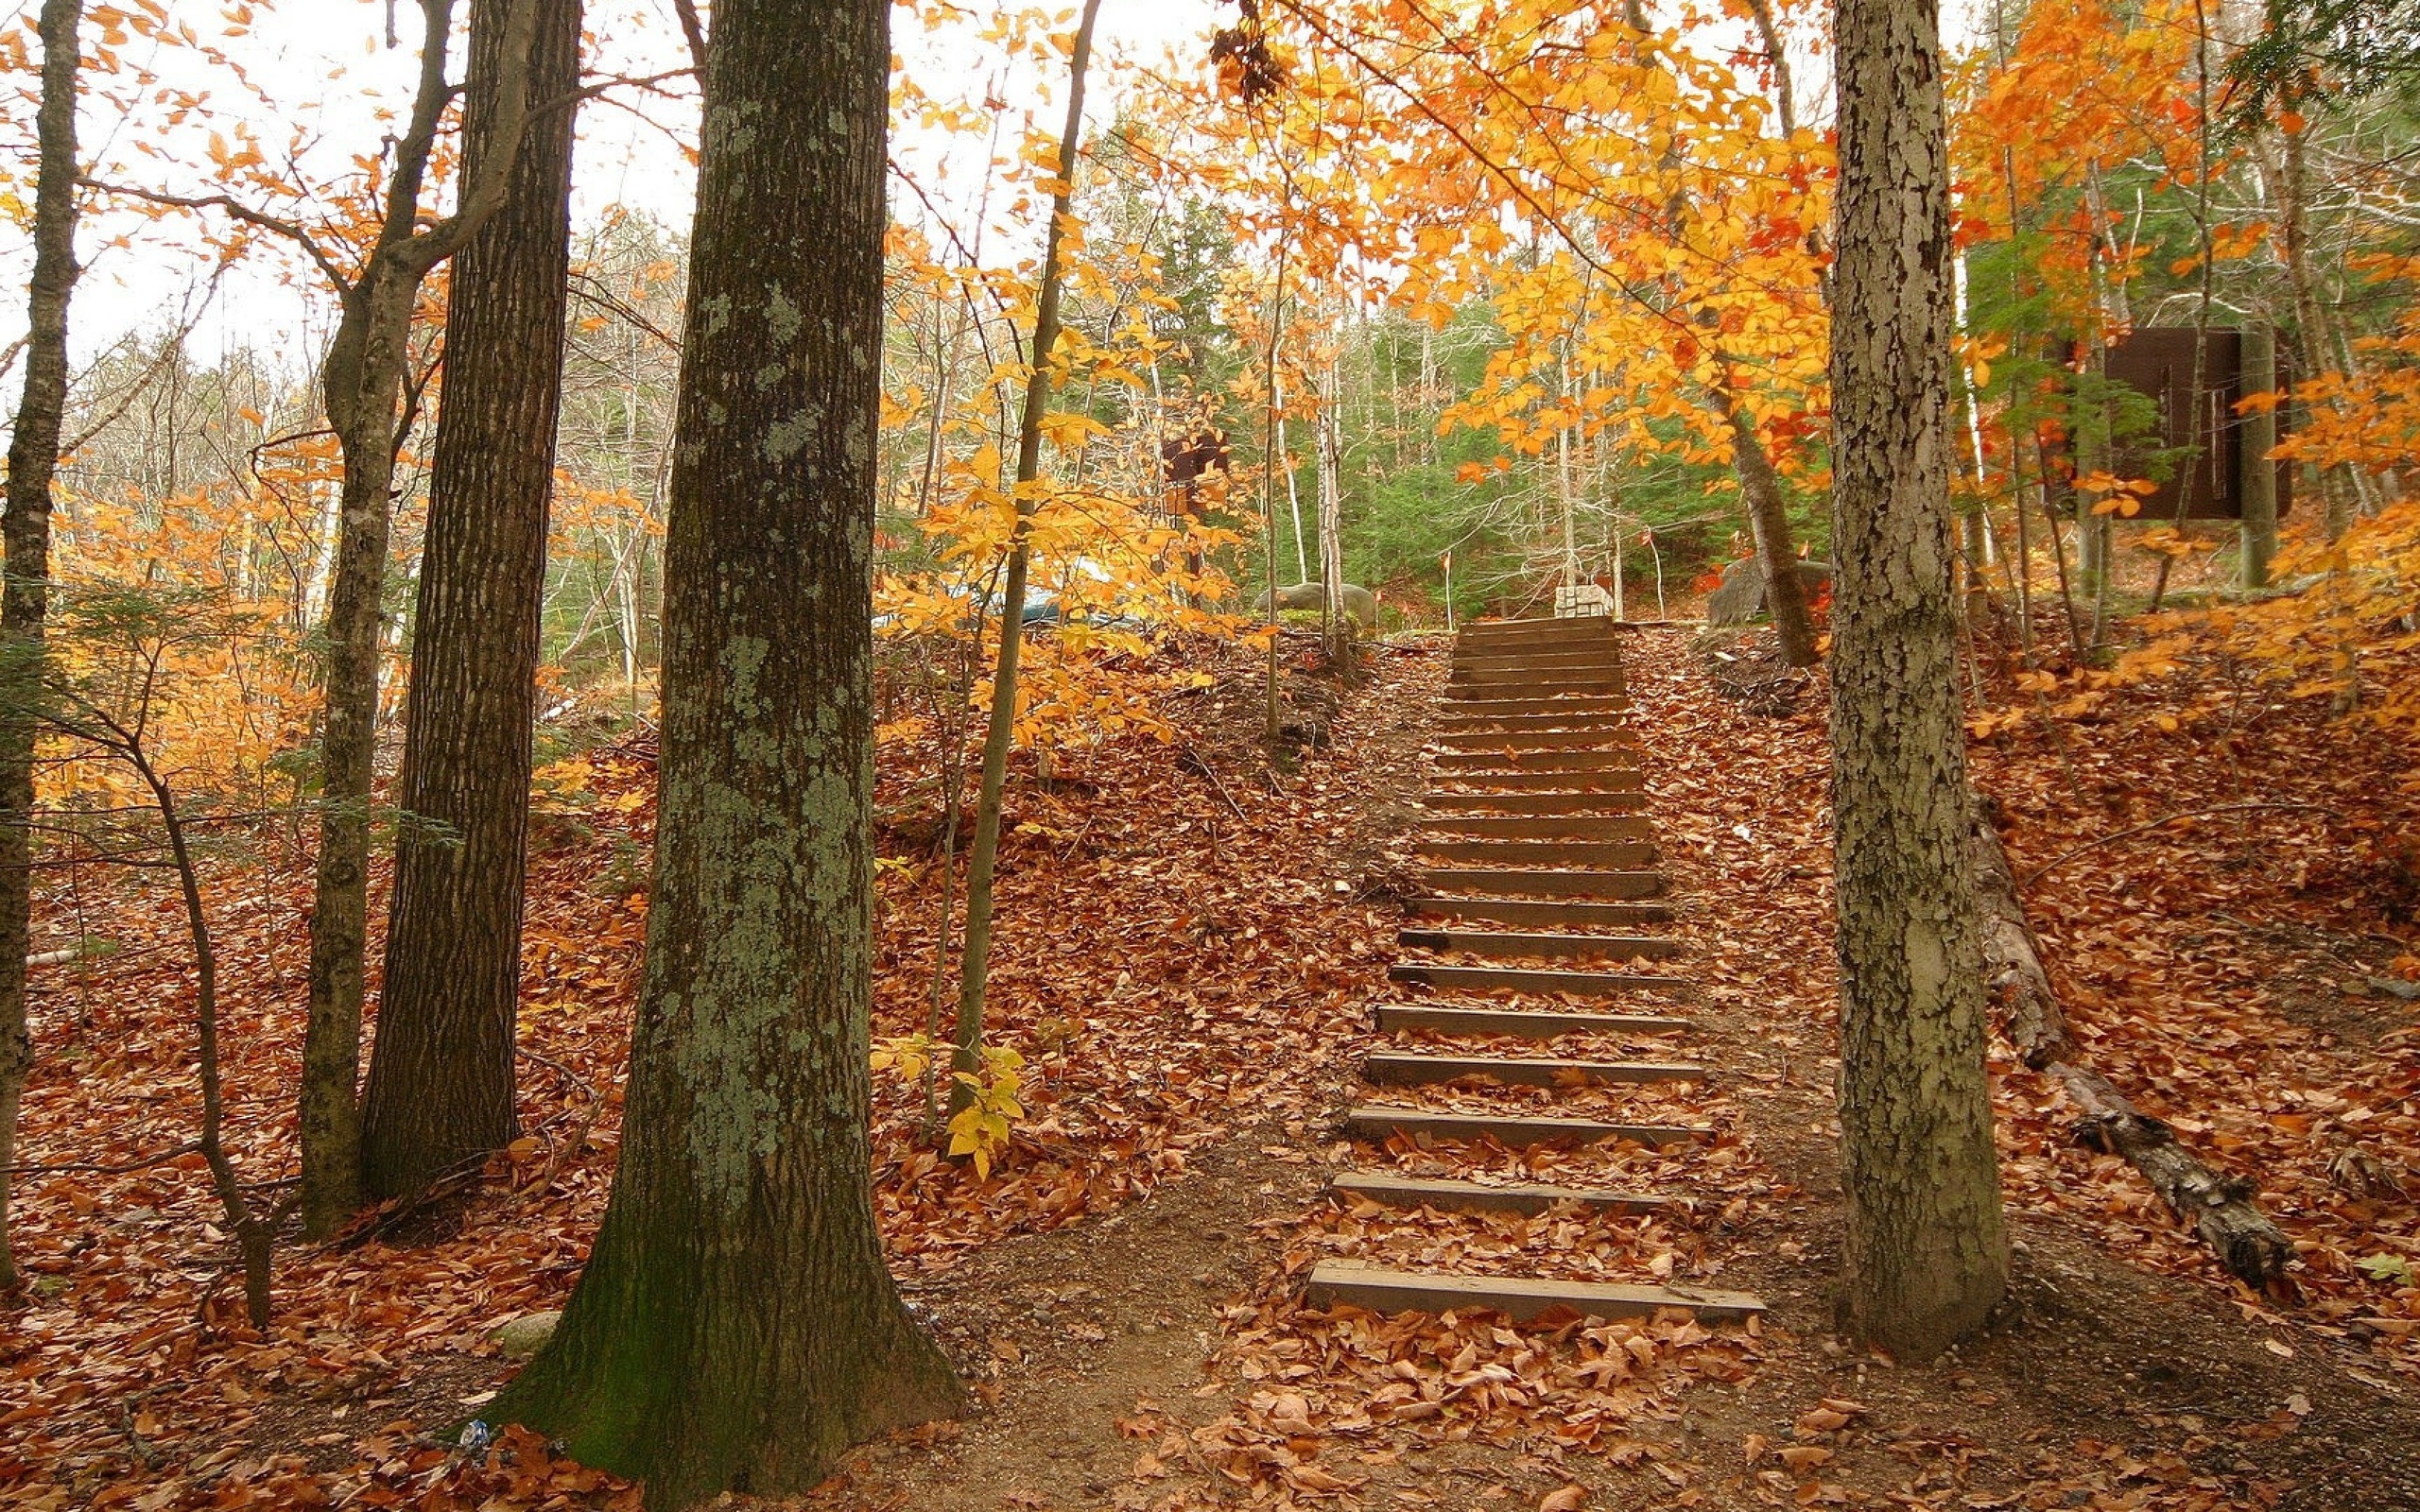 Fall scenes. Осенний лес. Осень в лесу. Осенняя тропинка. Лестница в лесу.